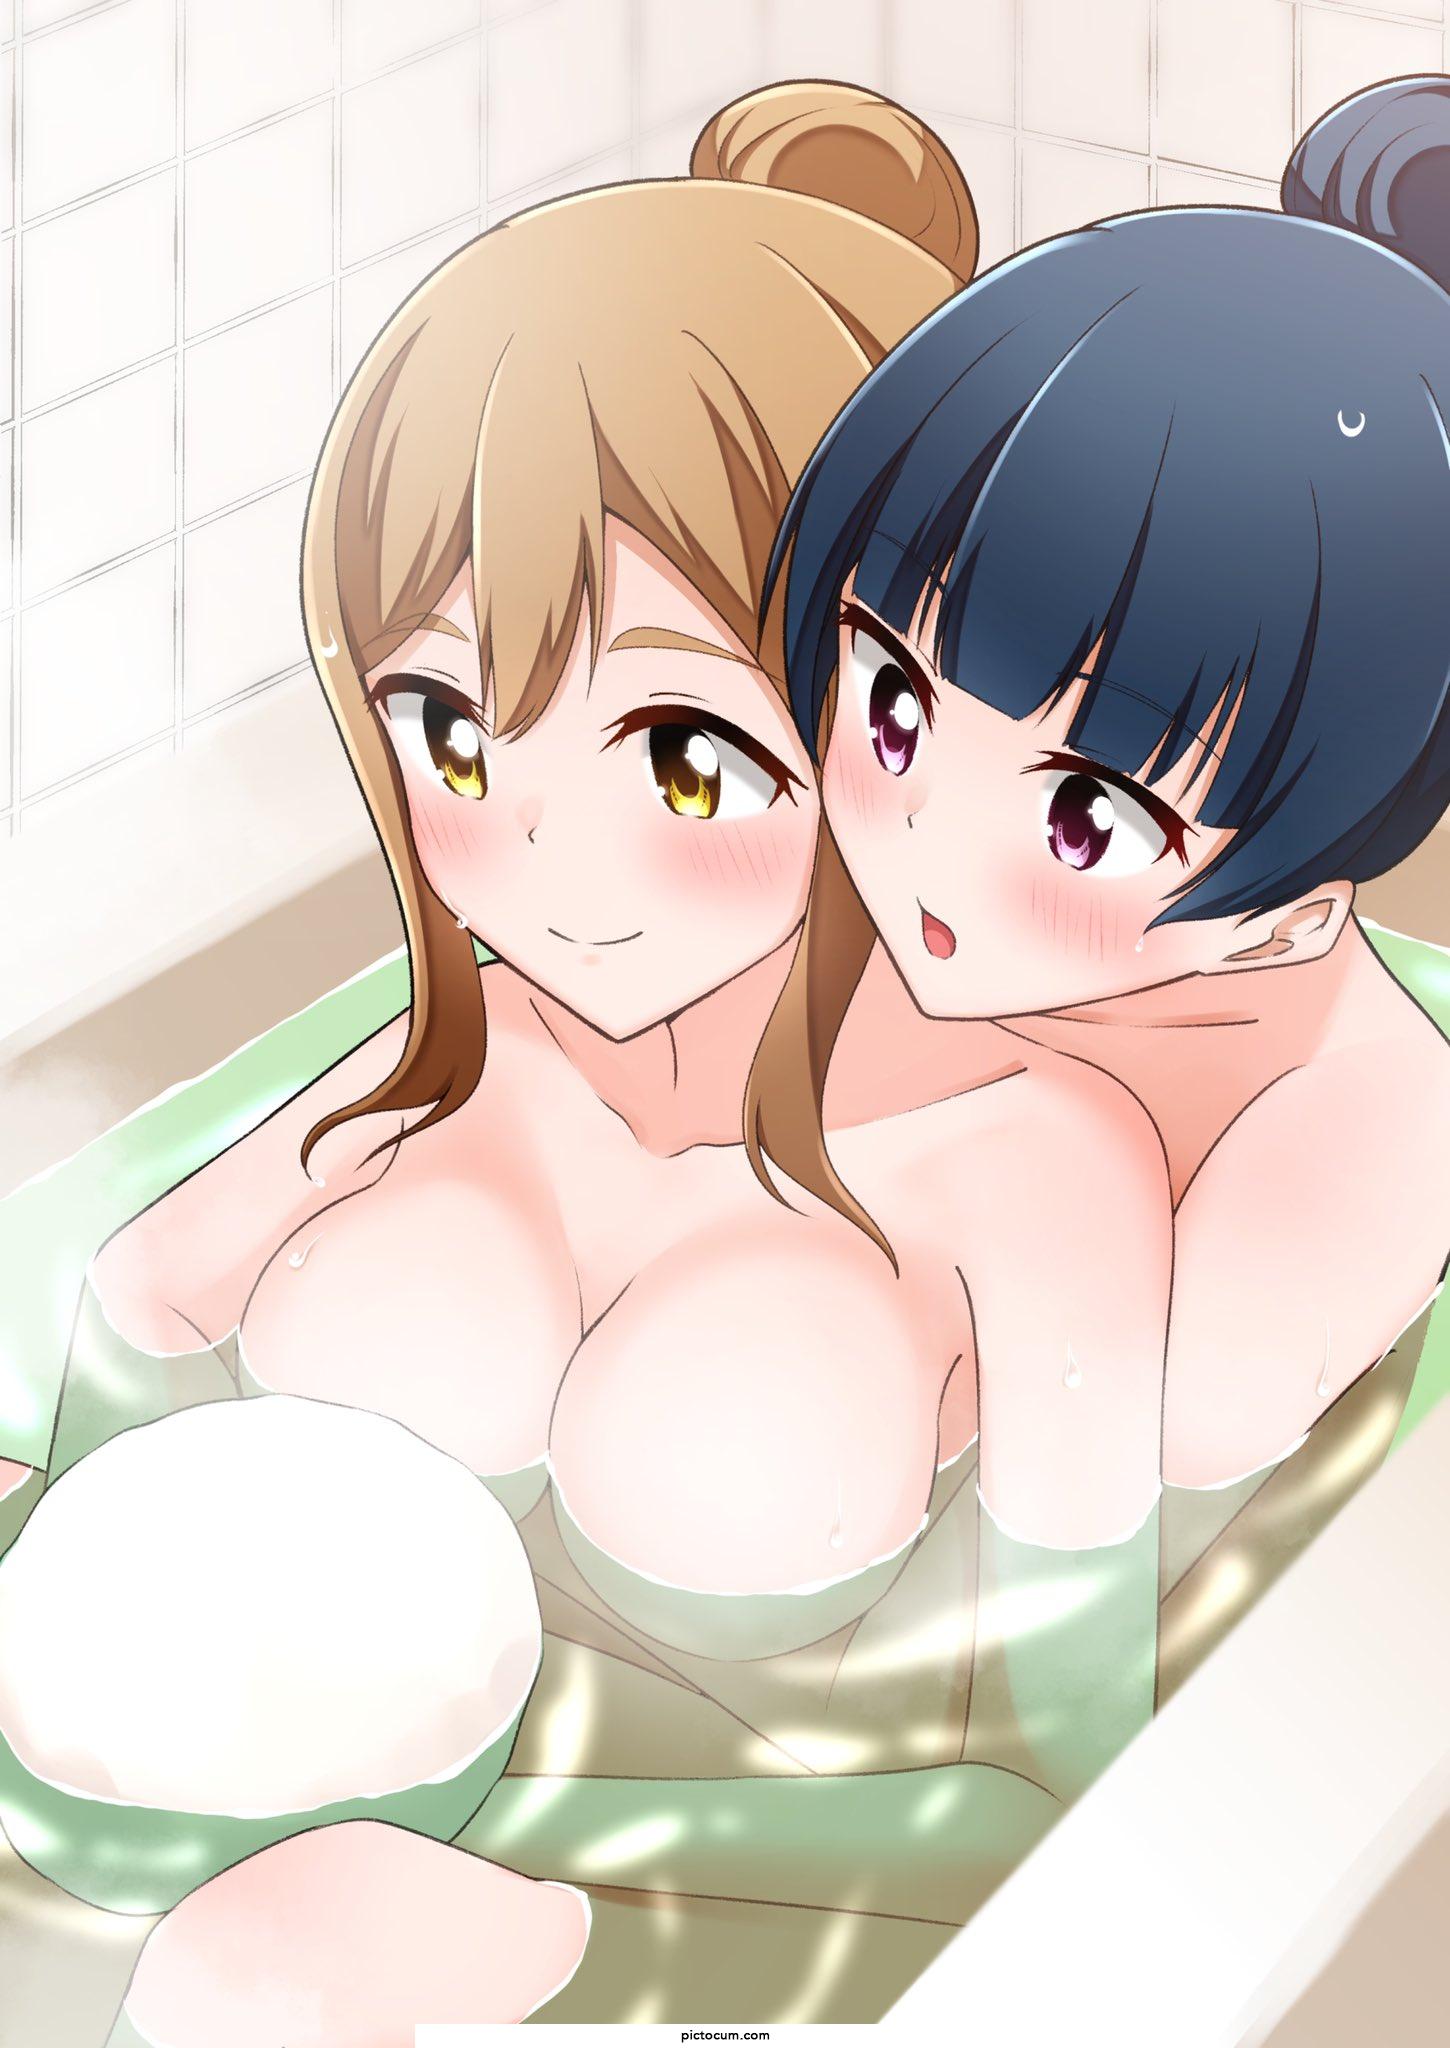 Hanamaru and Yoshiko bathe together